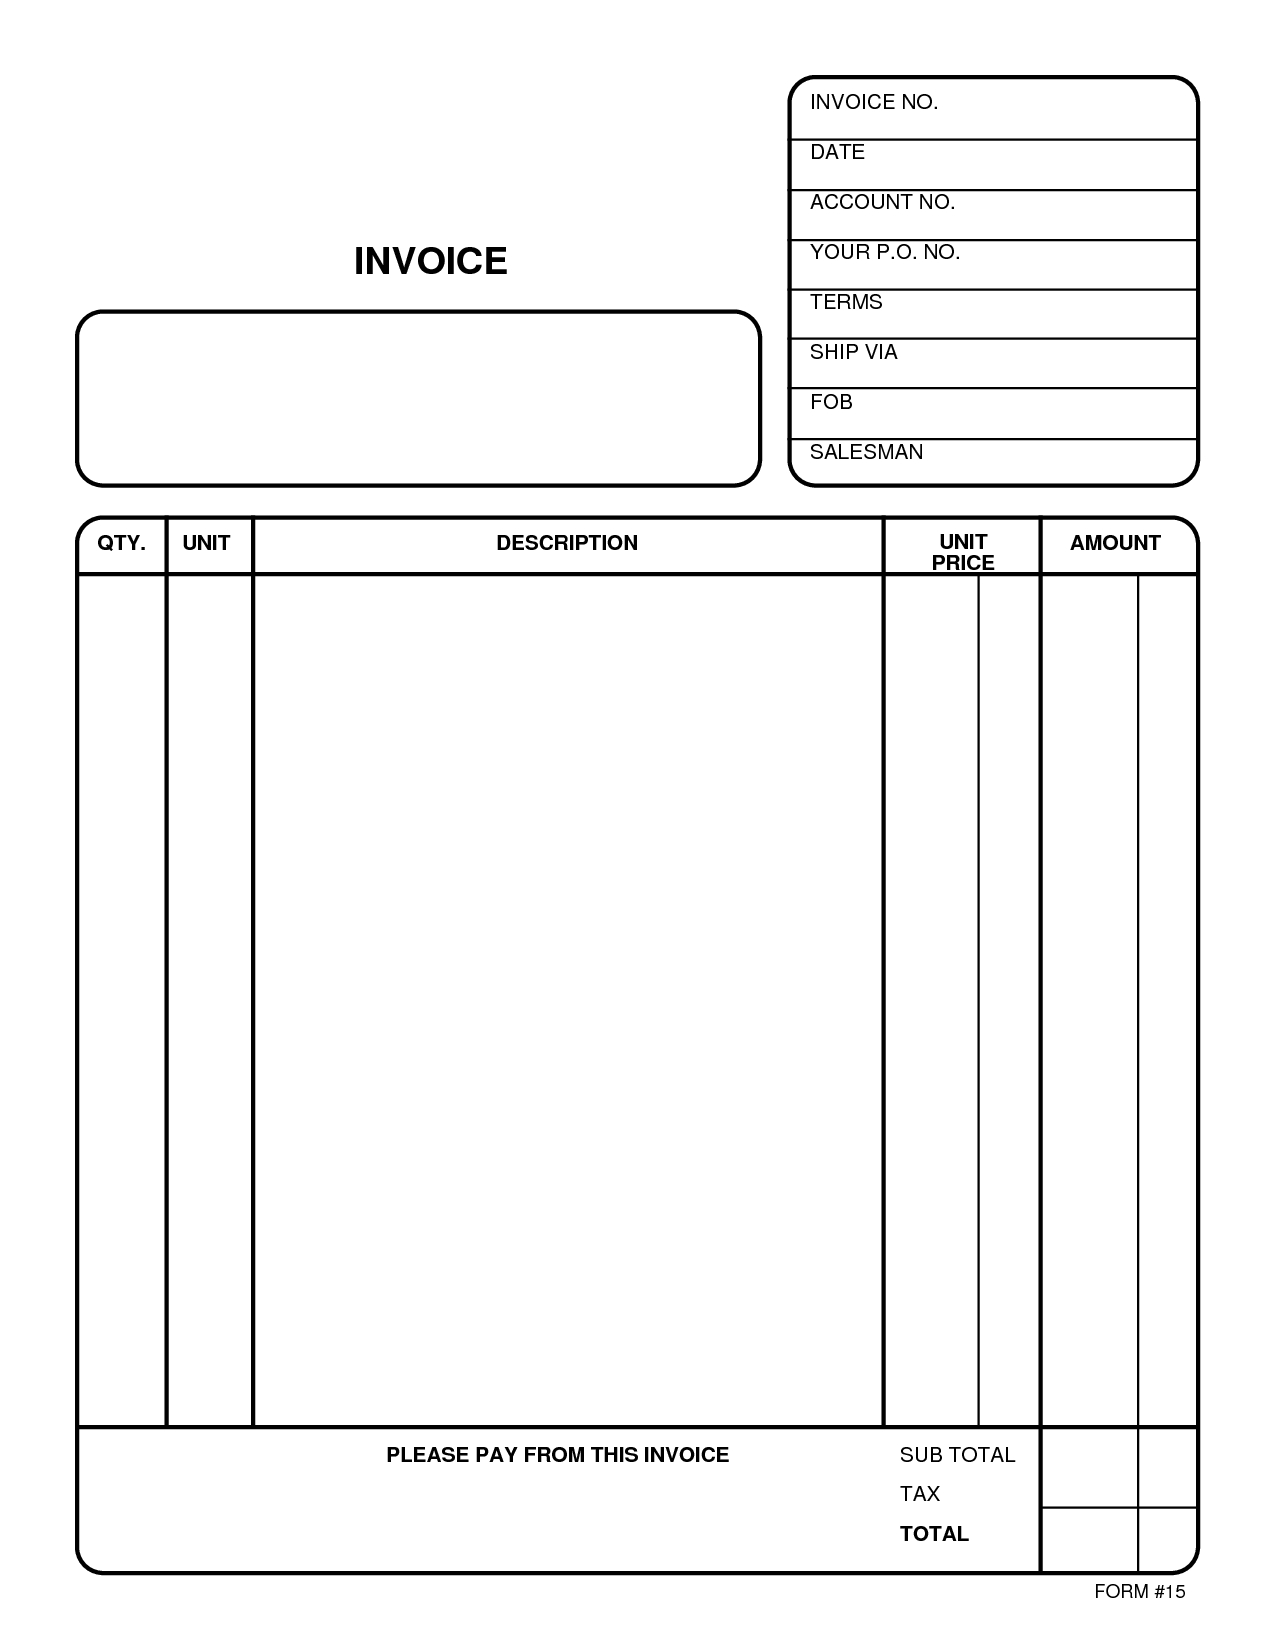 print invoice